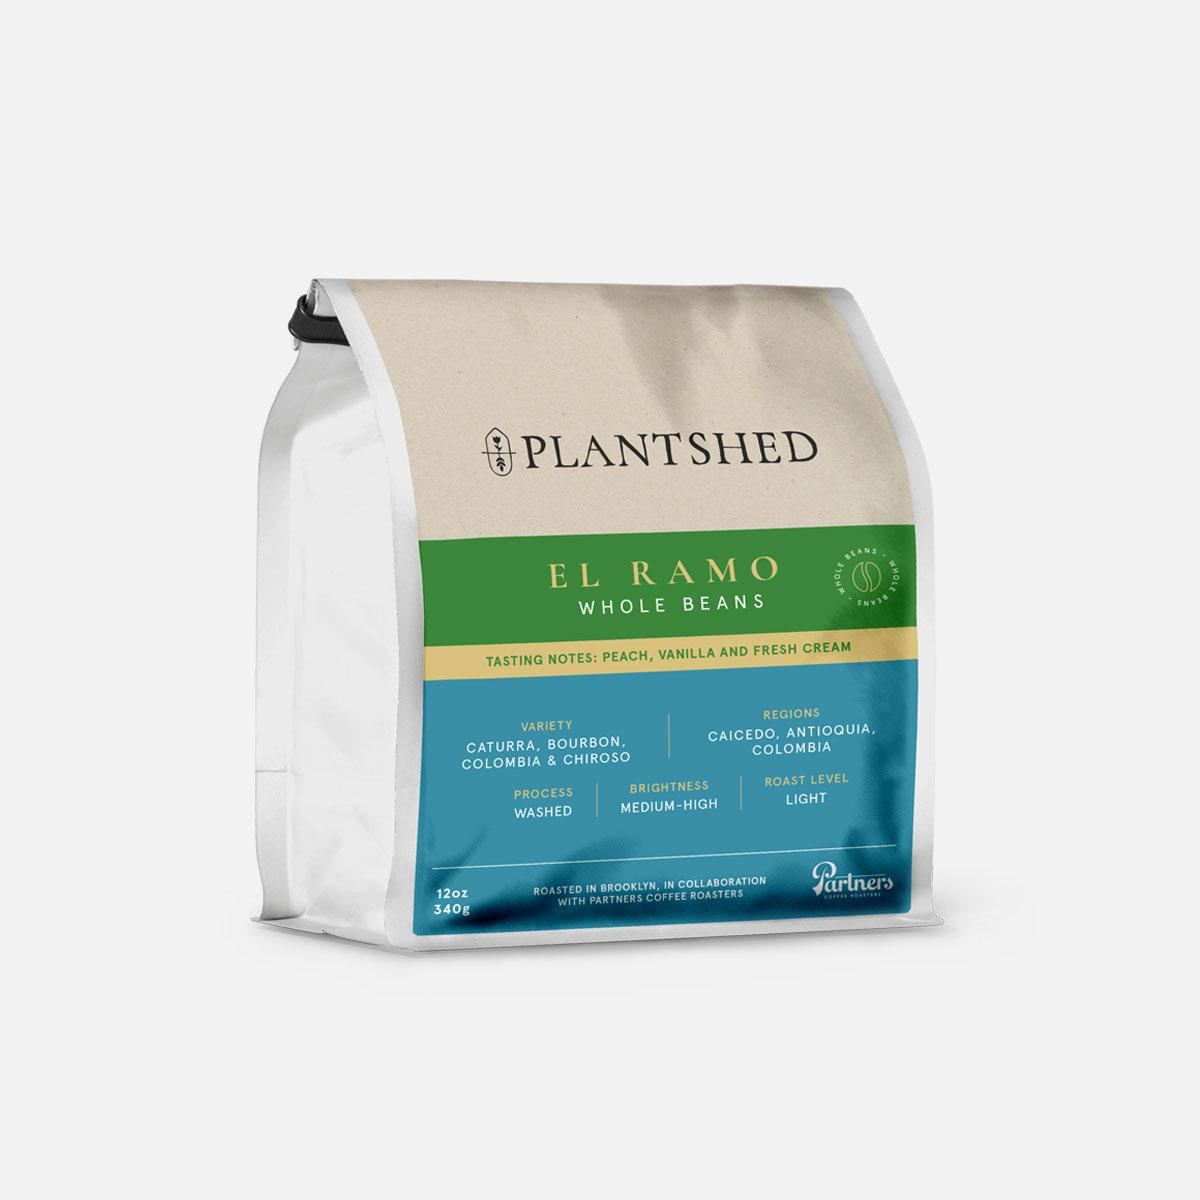 Sun & Sea + PlantShed Coffee - plantshed.com